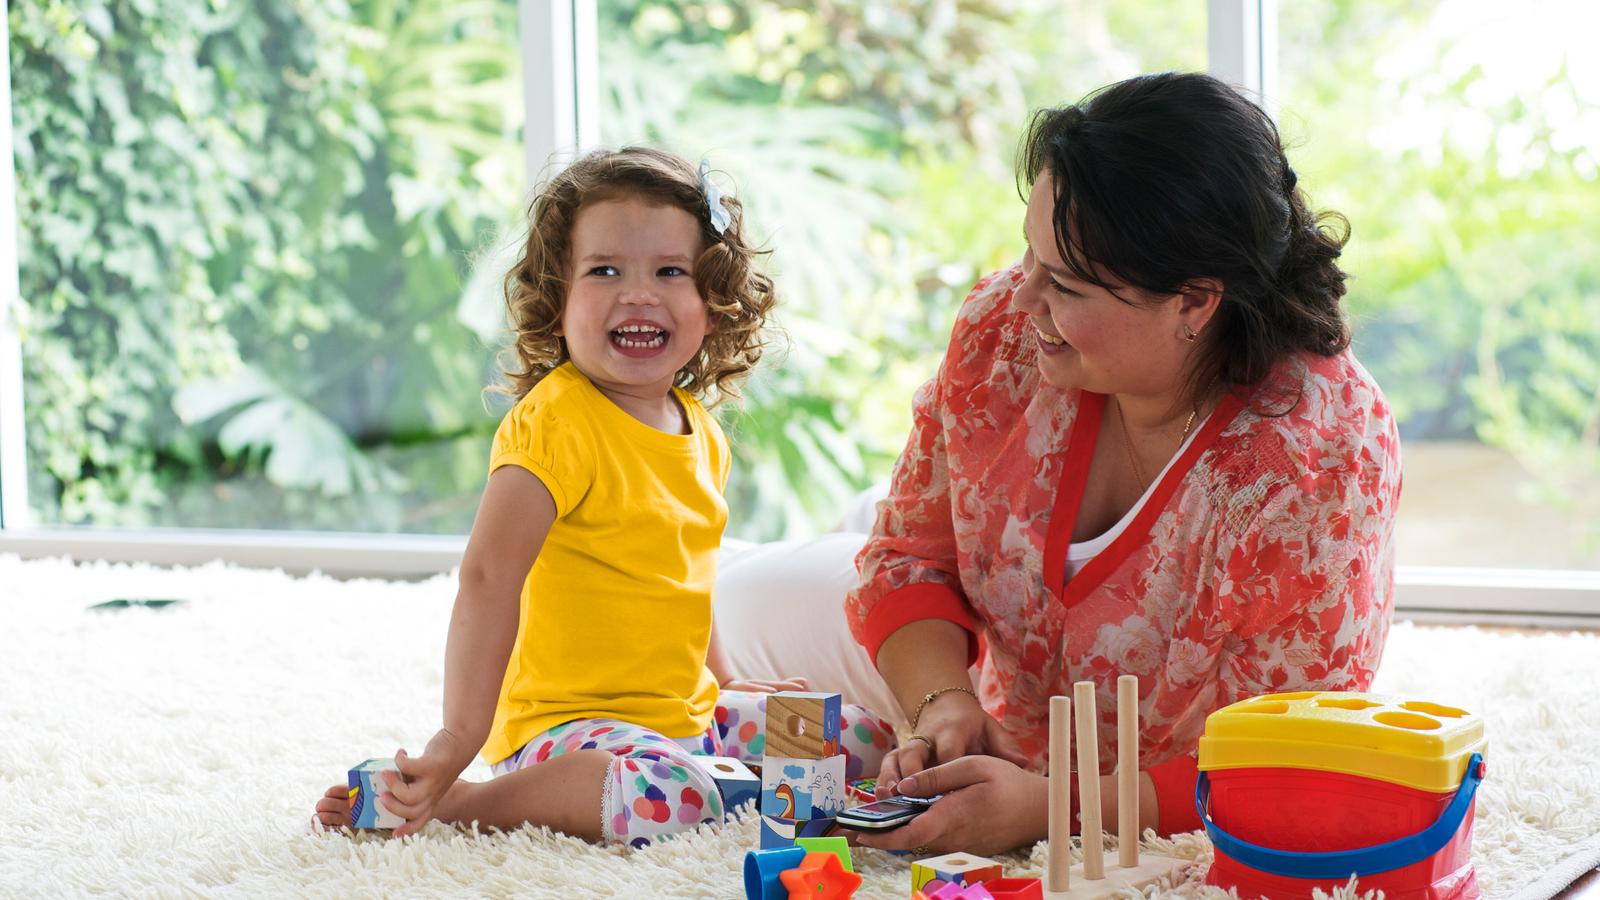 Et lille barn leger på gulvtæppet, mens en kvinde ser på